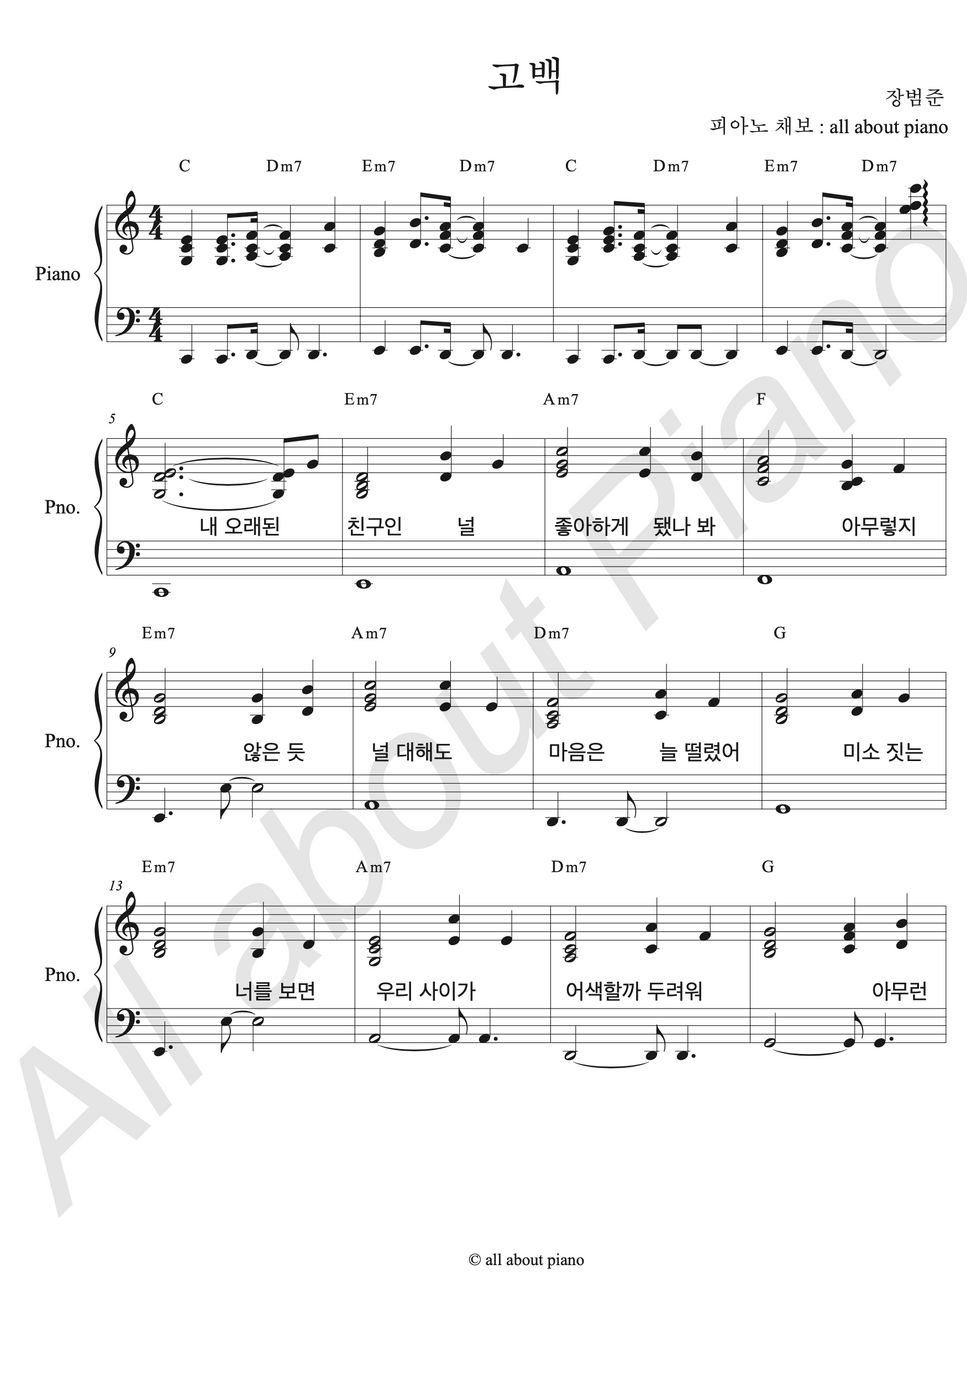 장범준 - 고백 (피아노 반주) by all about piano